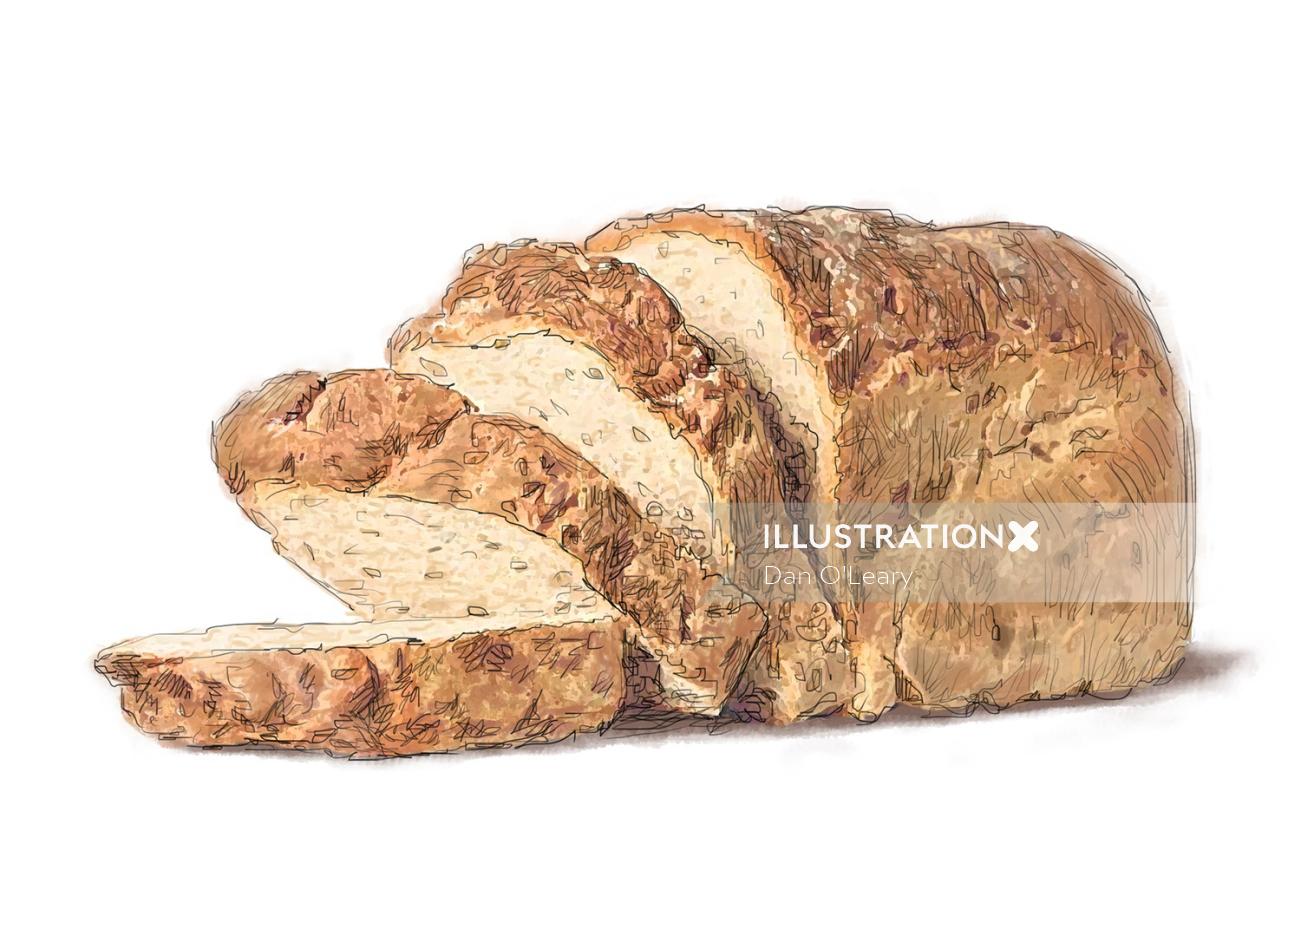 Sliced bread loaf
